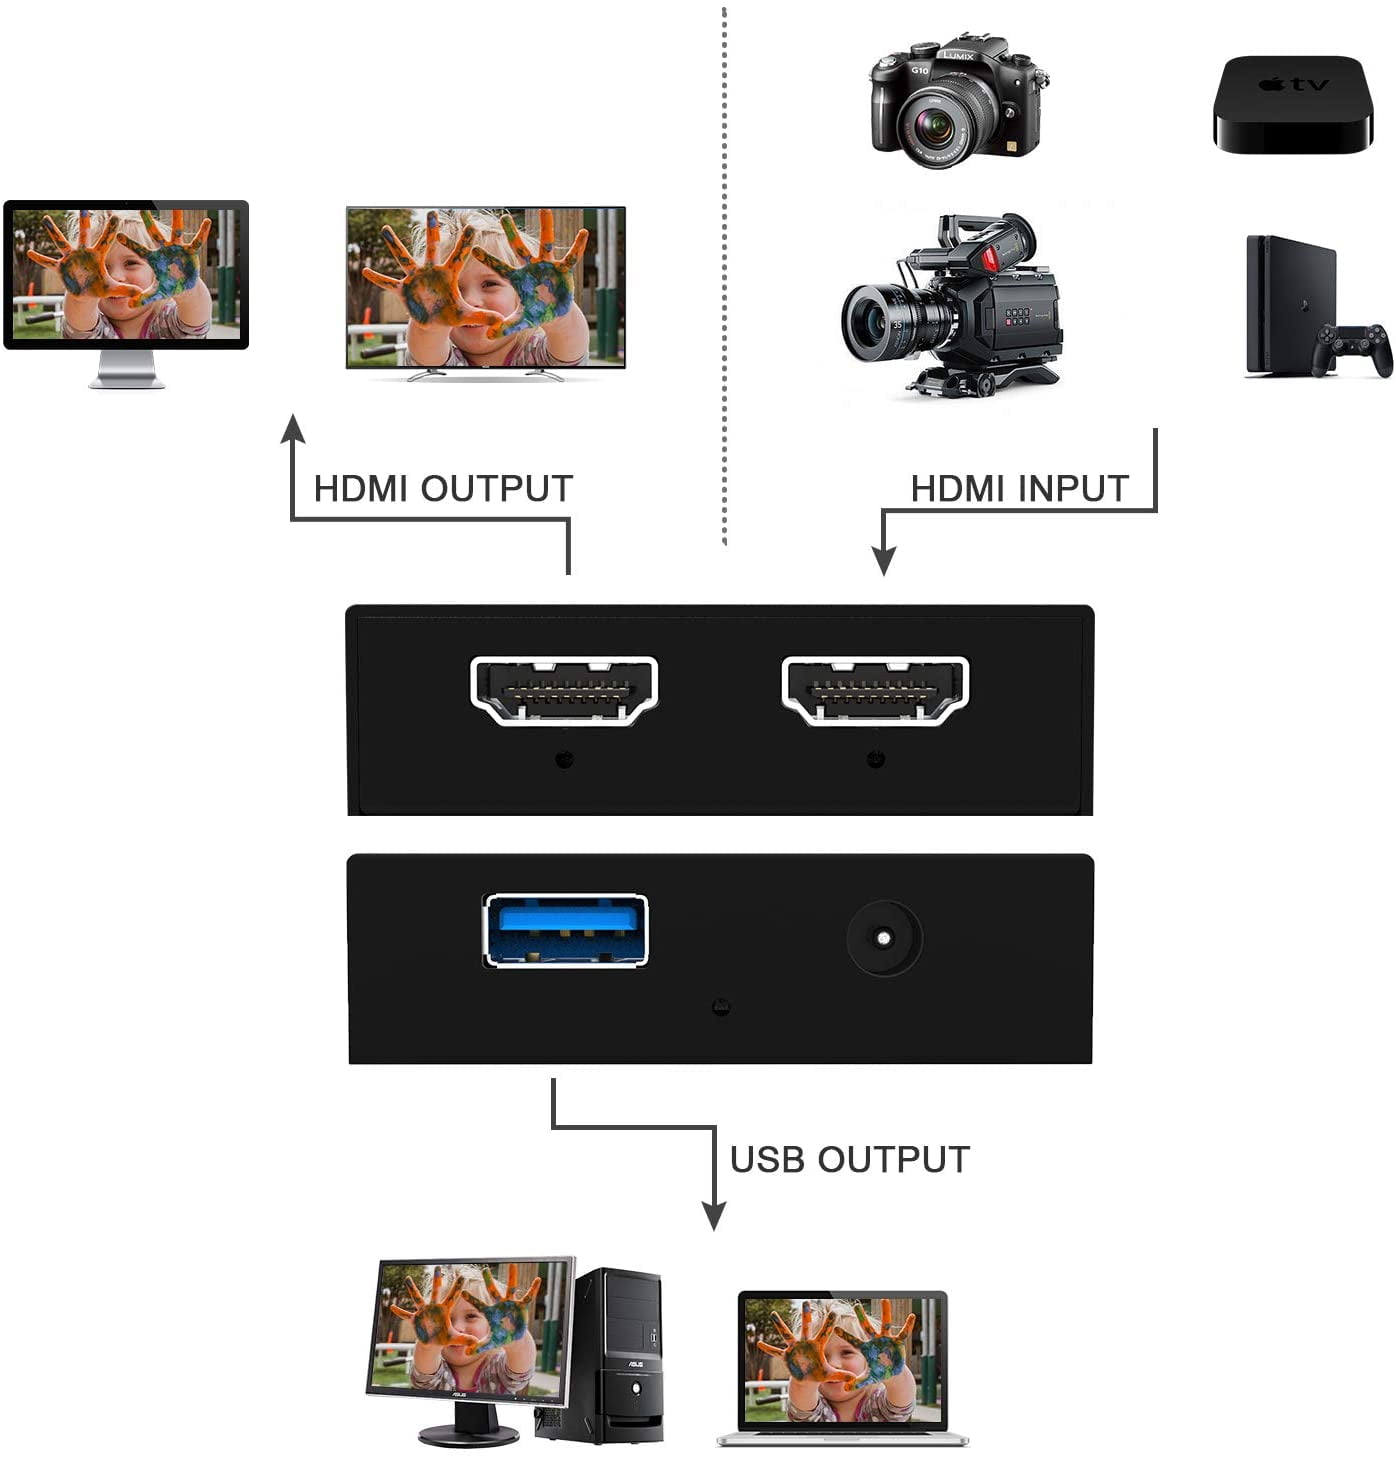 DIGITNOW Game Capture USB 3.0, 4K Video Grabber Video Capture Card